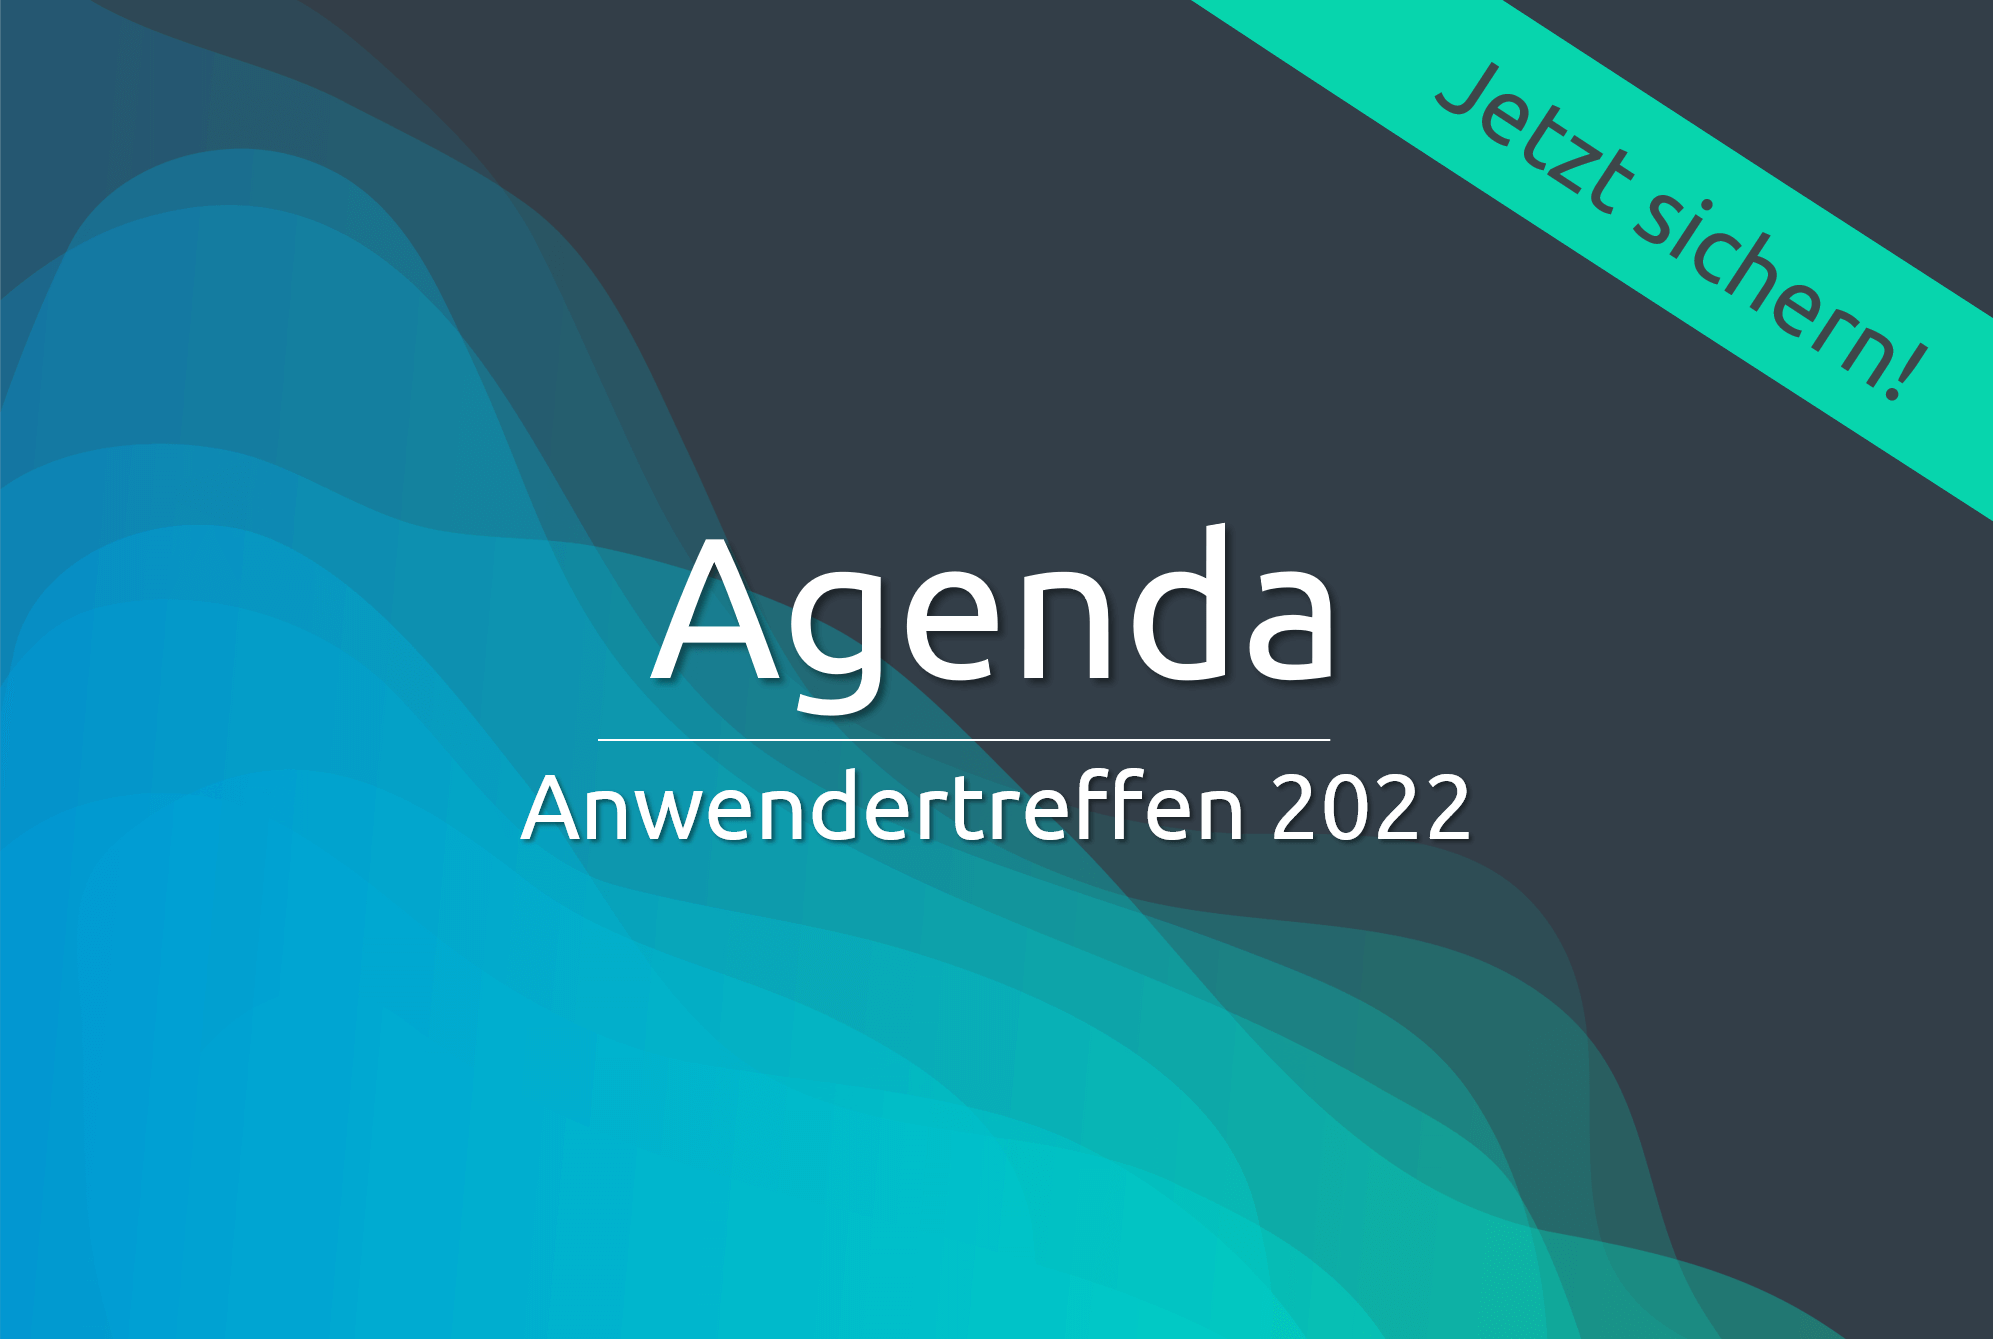 Abbildung Agenda Anwendertreffen 2022 auf einem blau-türkisen Hintergrund